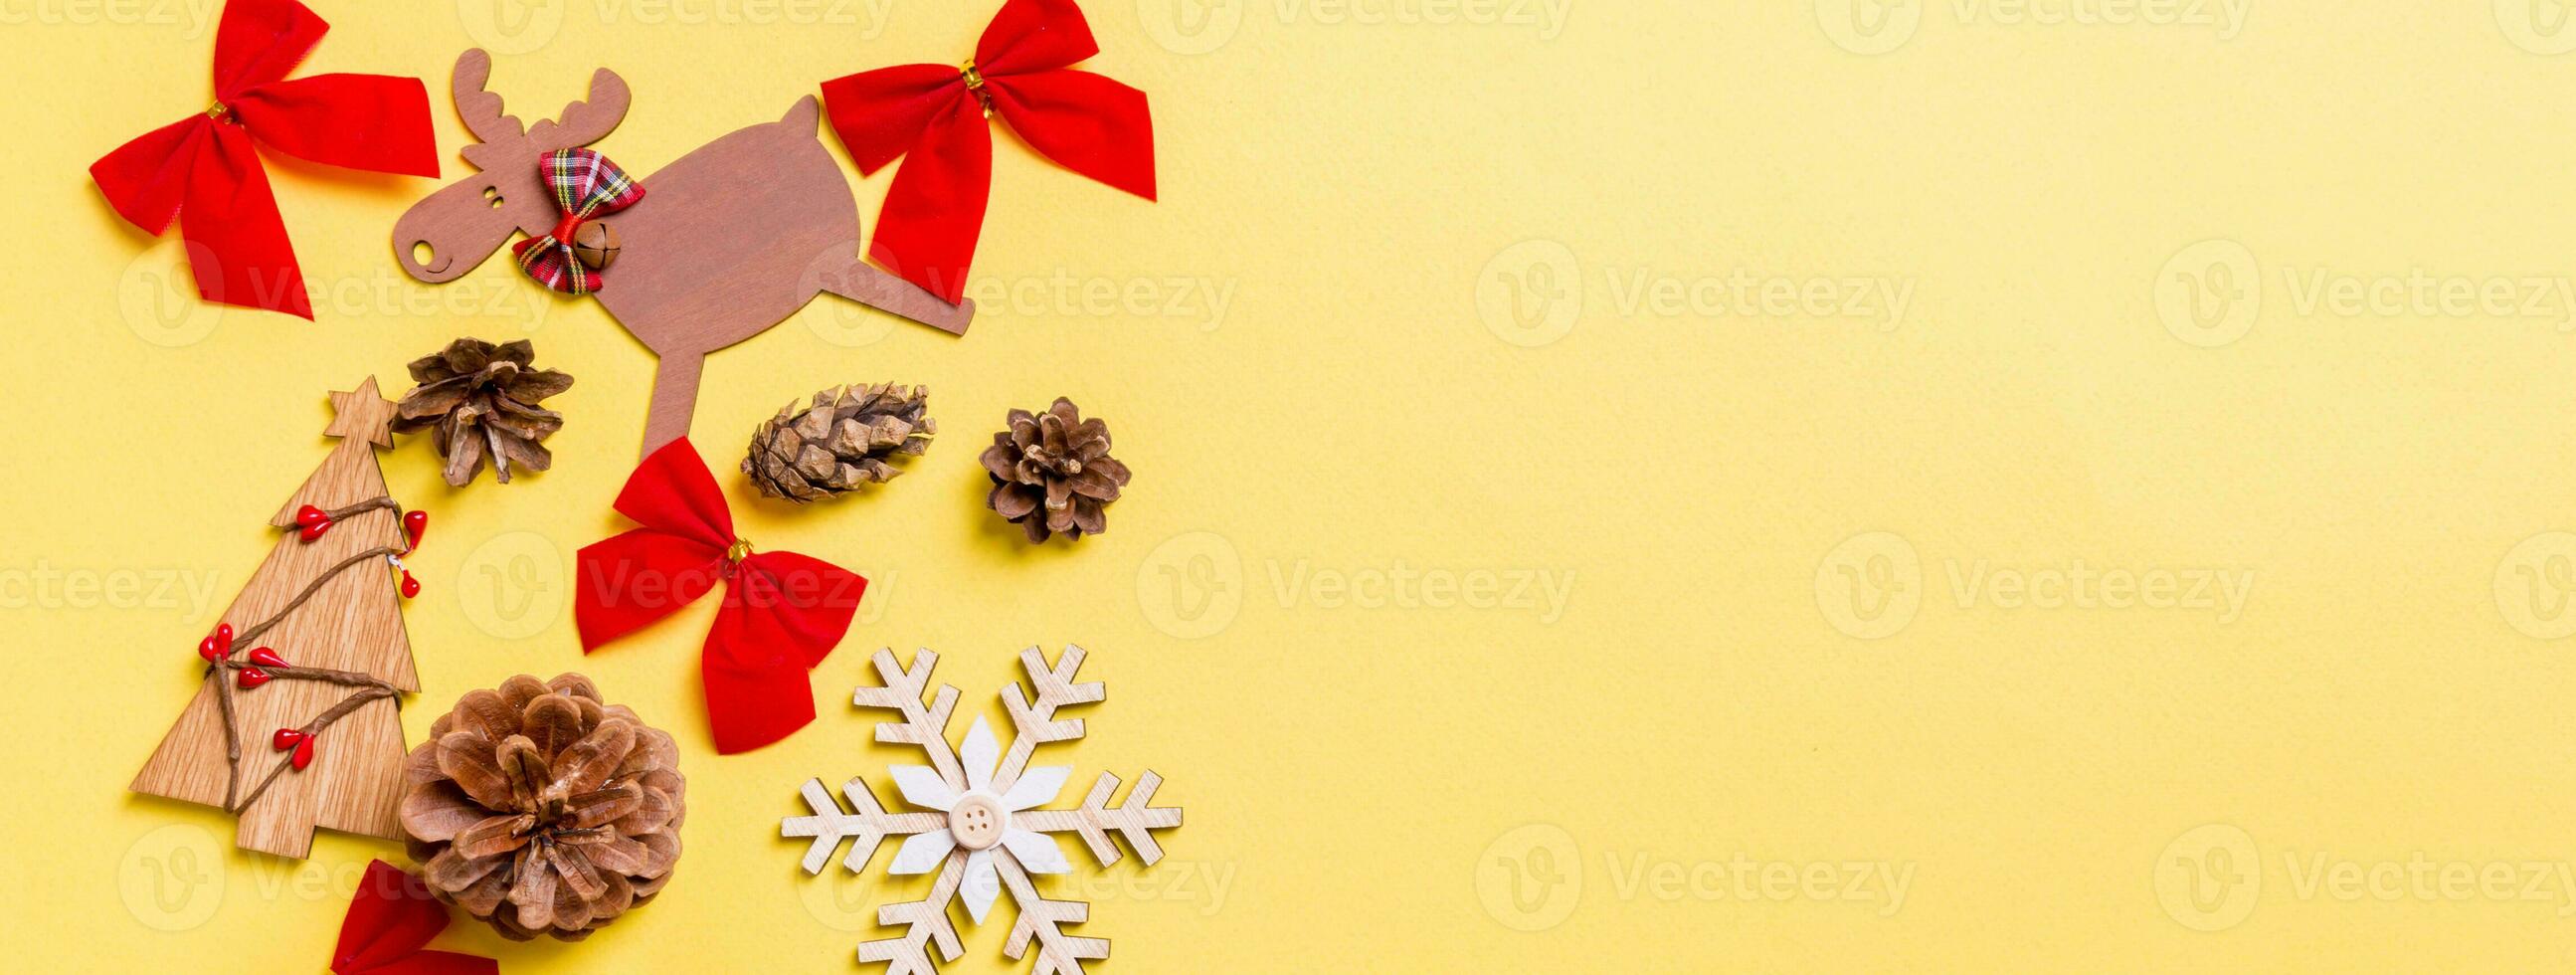 Navidad amarillo antecedentes con fiesta juguetes y decoraciones bandera contento nuevo año concepto con vacío espacio para tu diseño foto